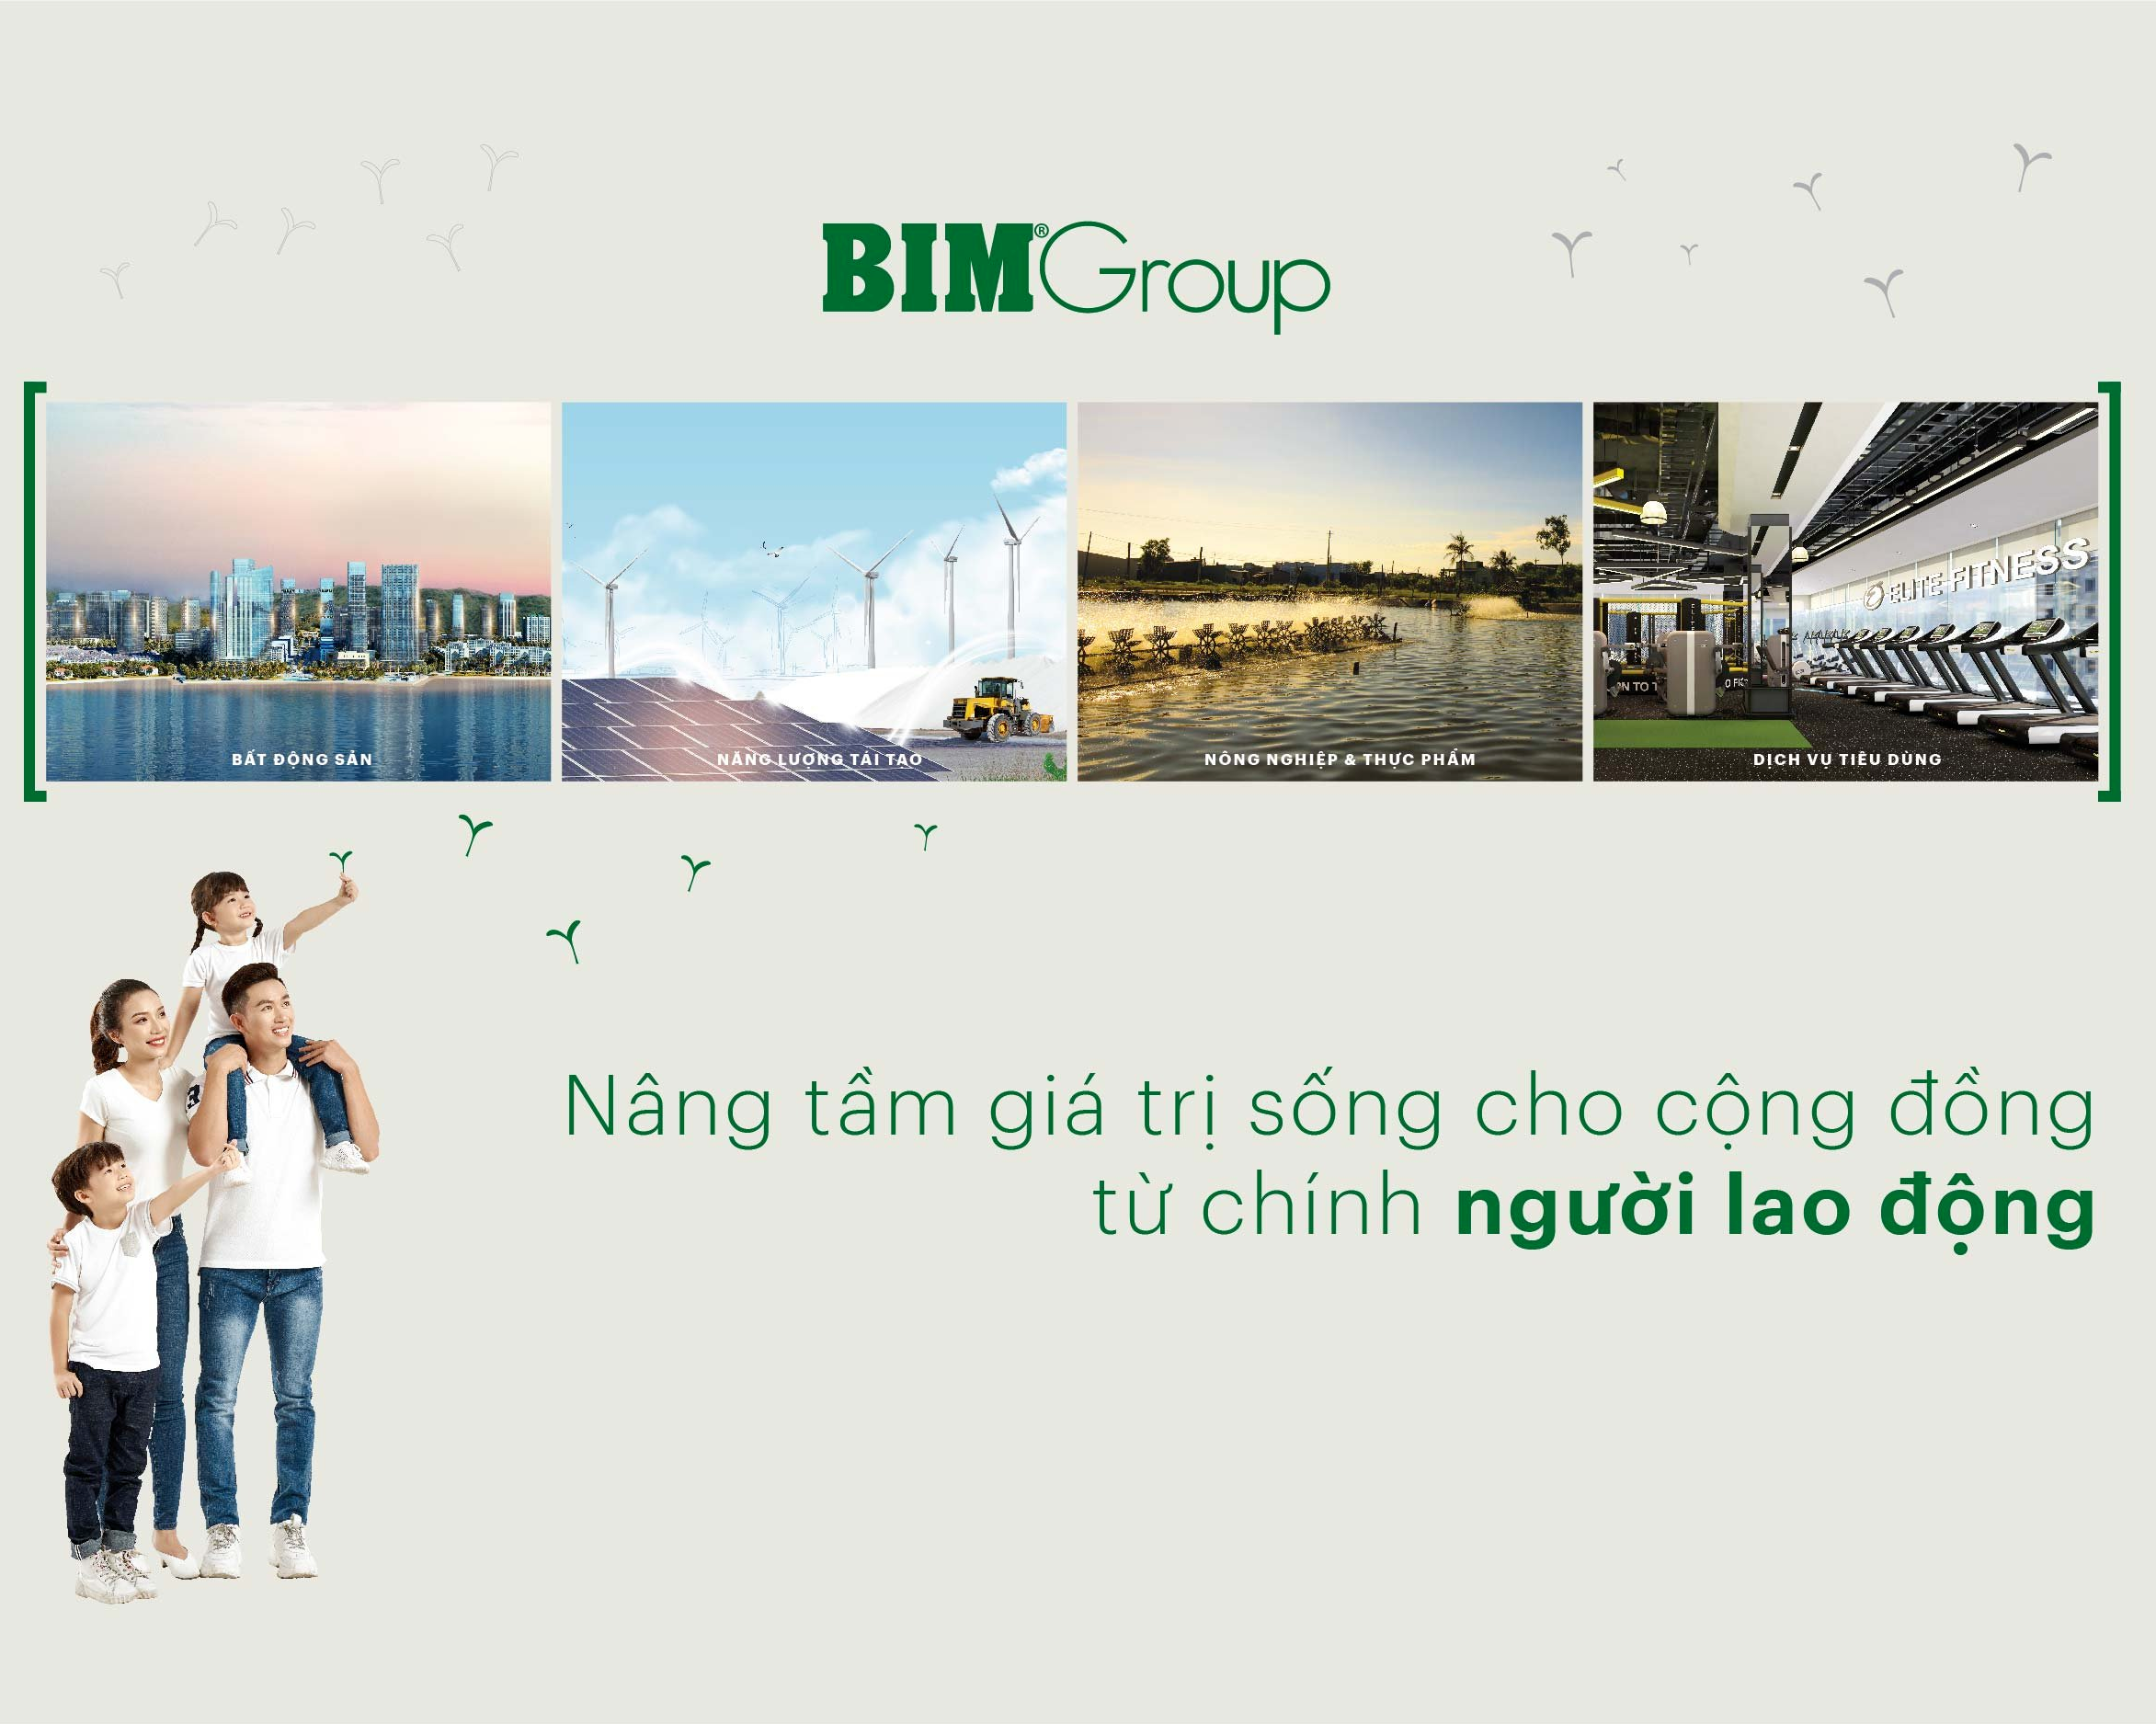 BIM Group – nâng tầm giá trị sống cho cộng đồng từ chính người lao động